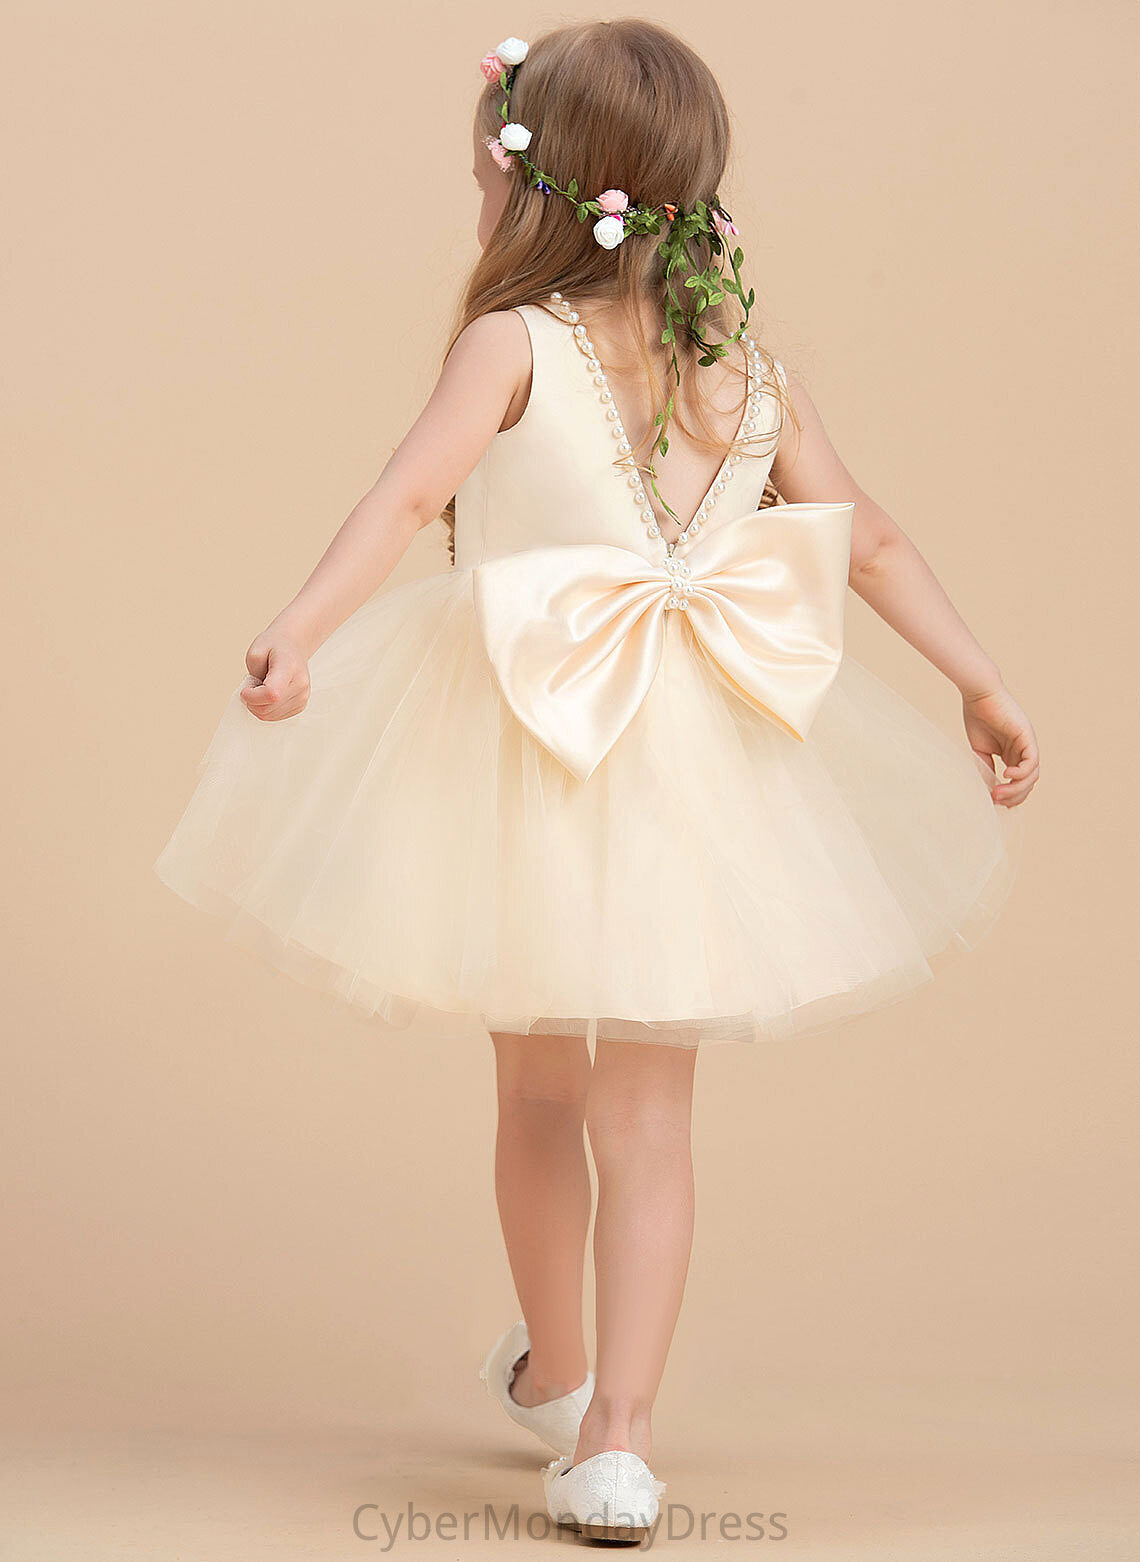 Flower Knee-length - Beading Satin/Tulle Sleeveless Flower Girl Dresses With Belinda Girl Neck Scoop A-Line Dress